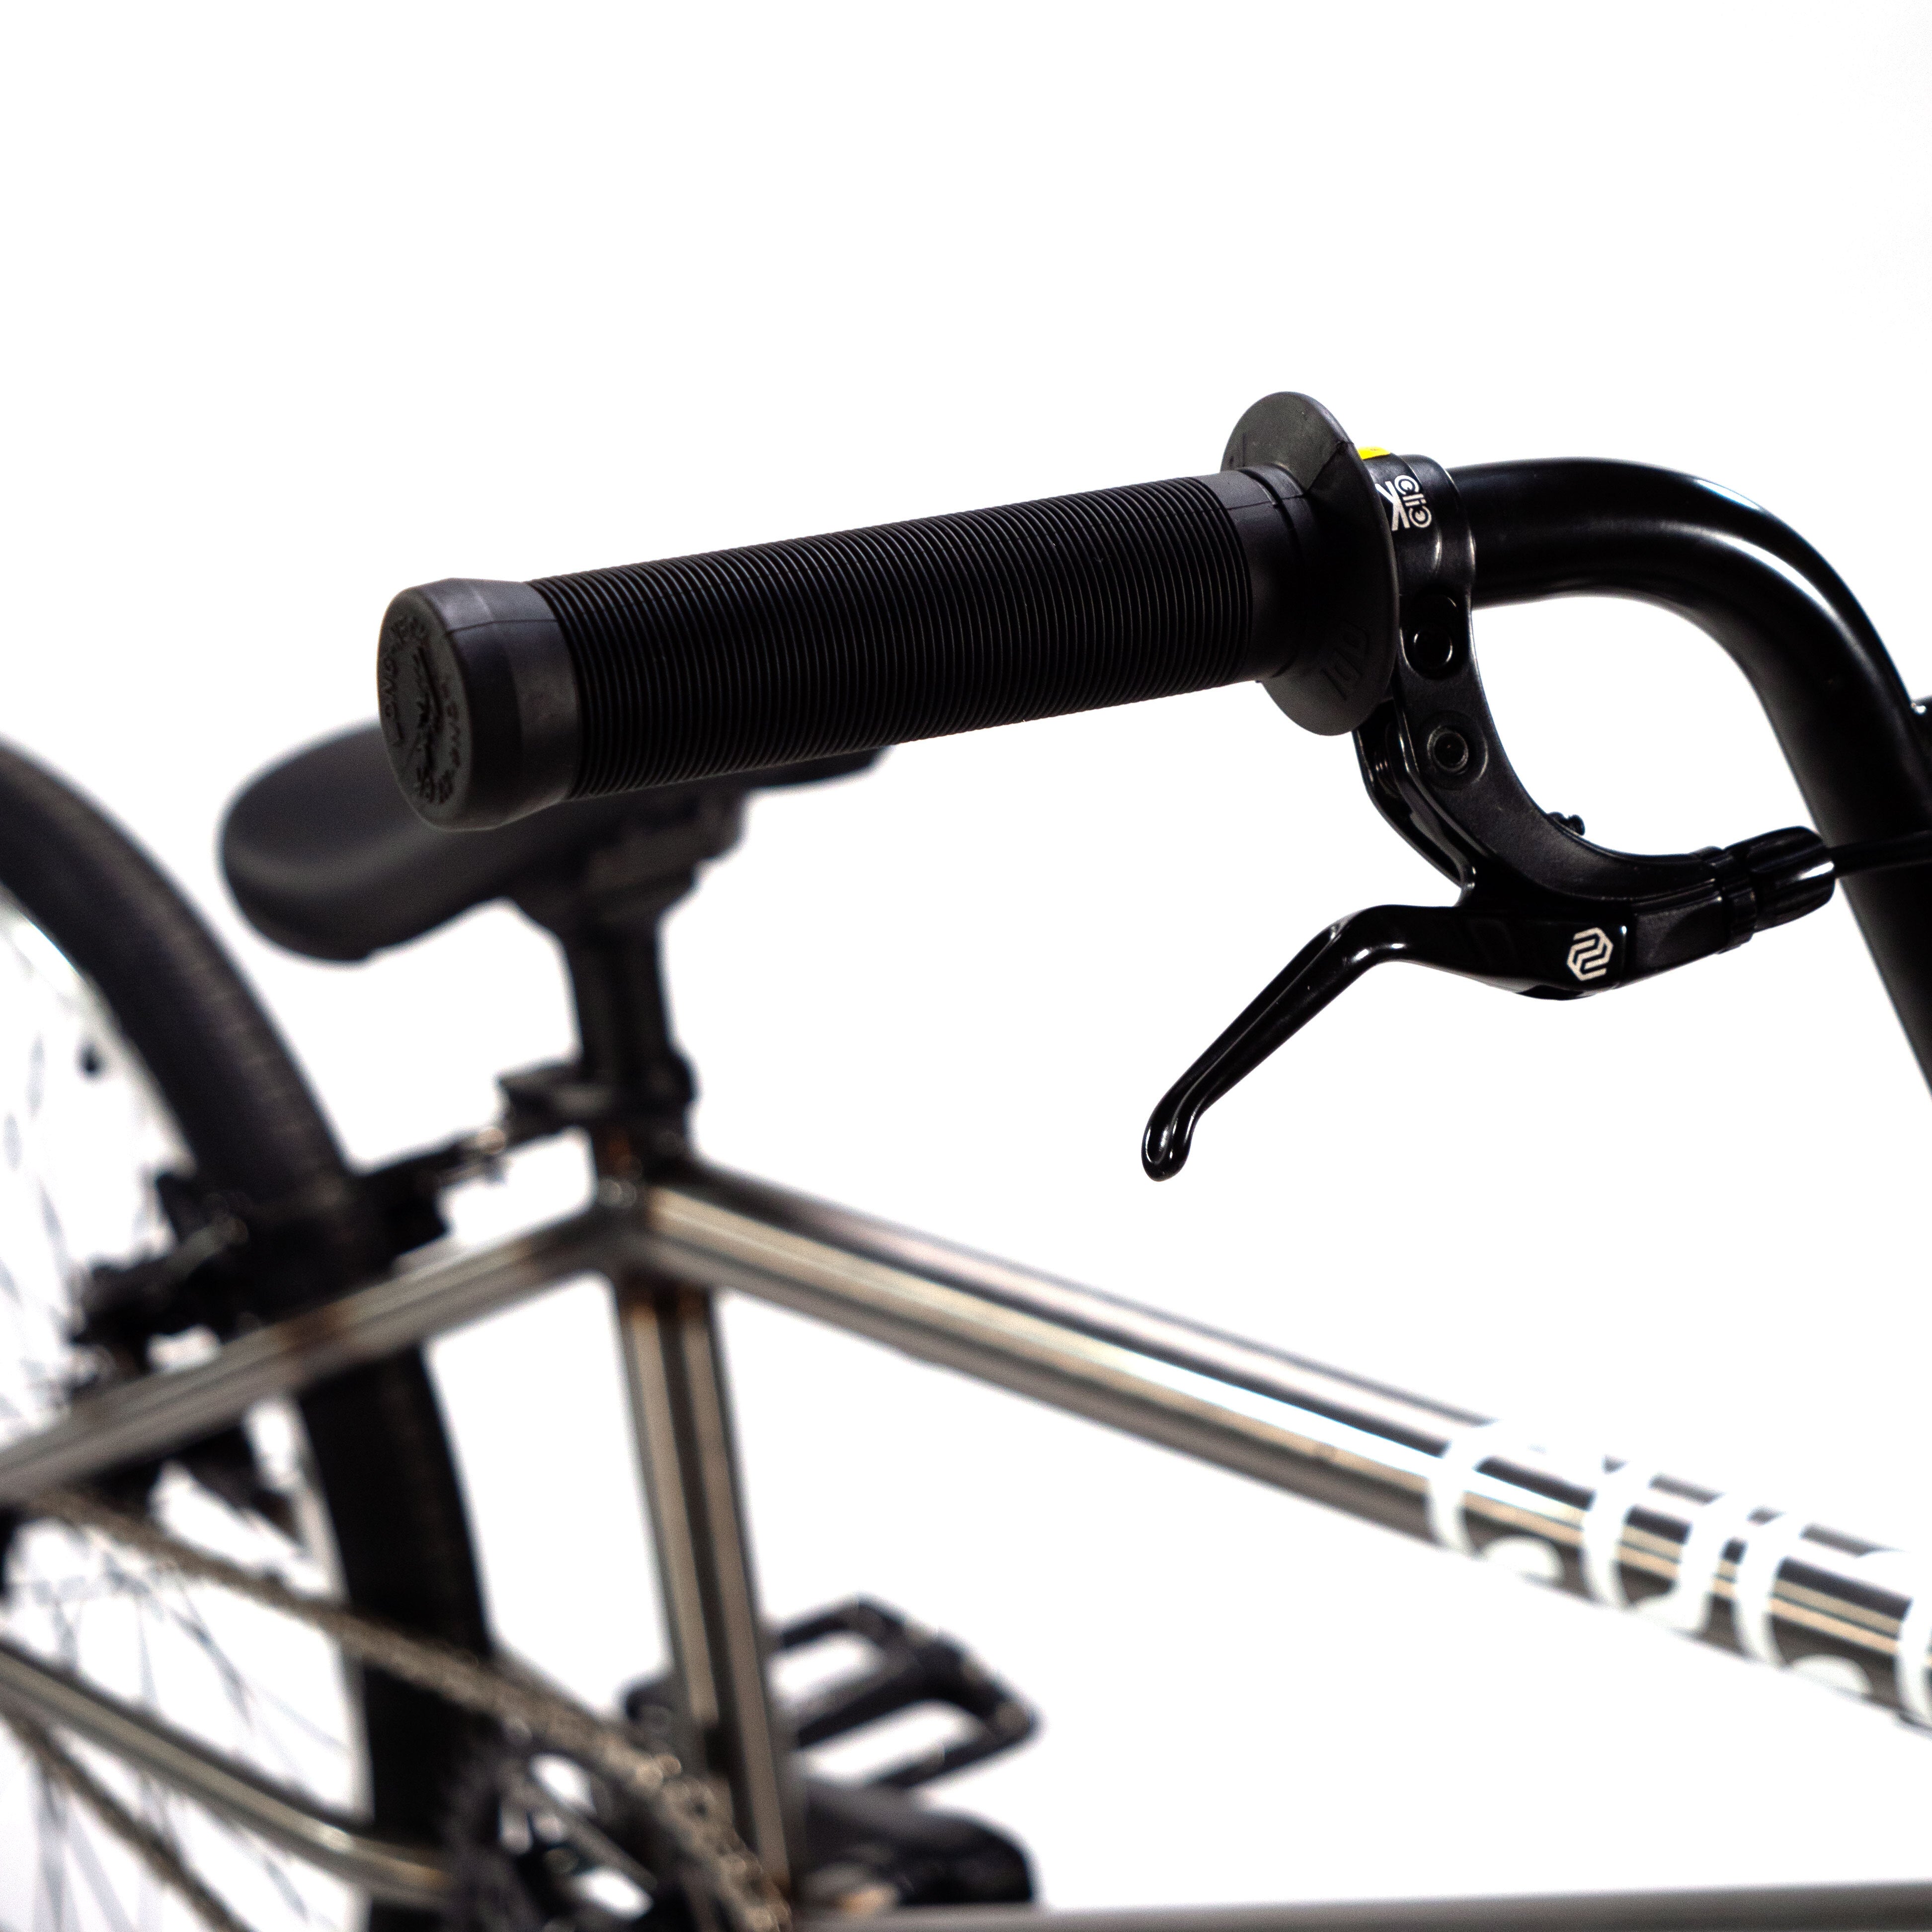 A close up of the handlebars of a Cult Vick Behm Custom Race Bike.